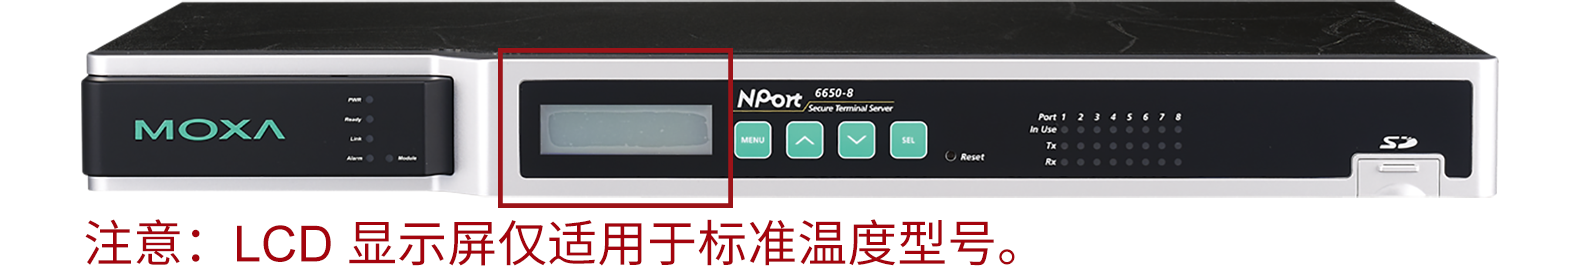 摩莎NPort 6400/6600 系列安全终端服务器